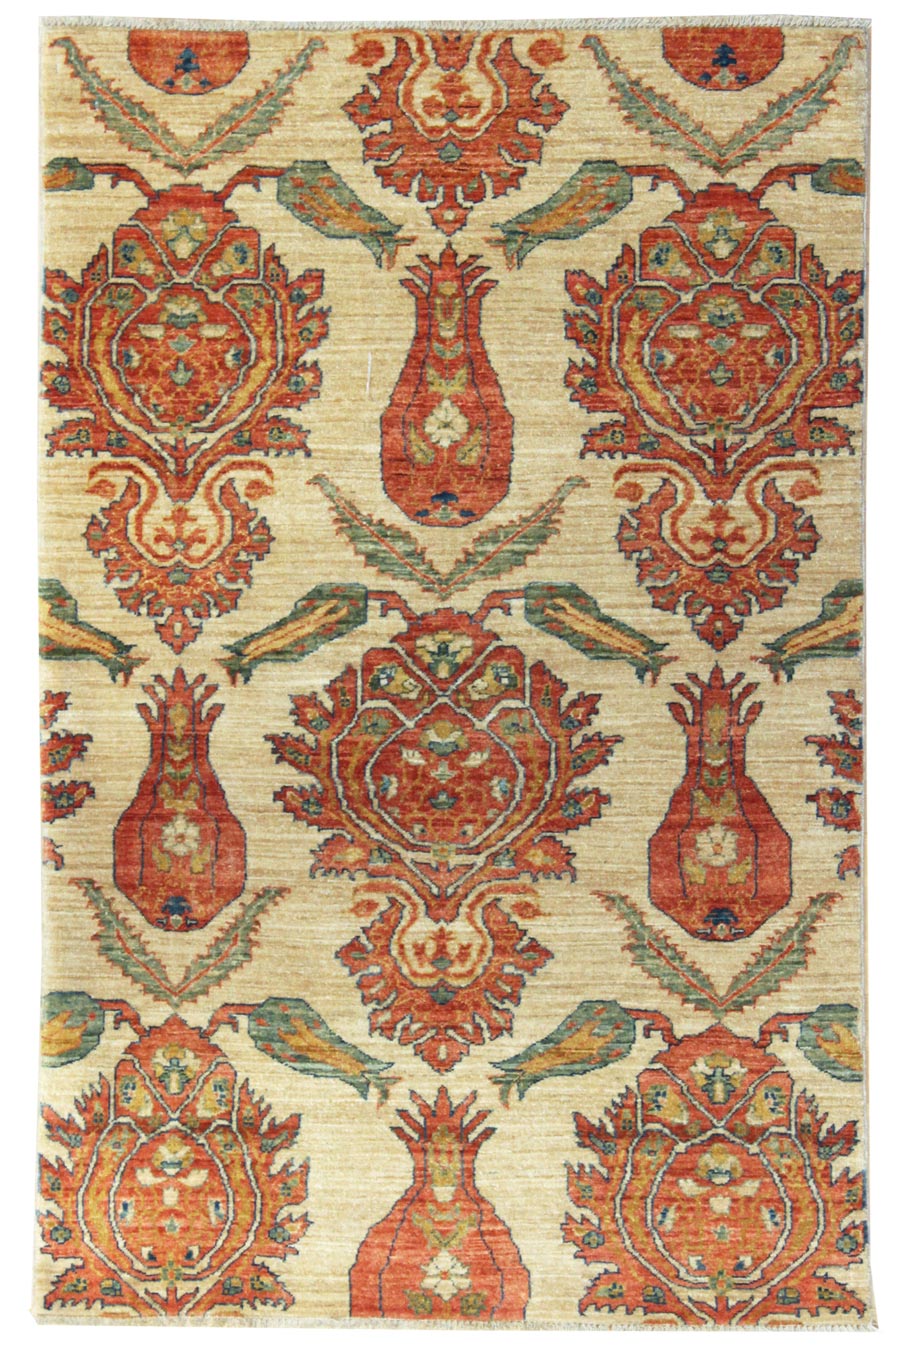 Ottoman Handwoven Traditional Rug